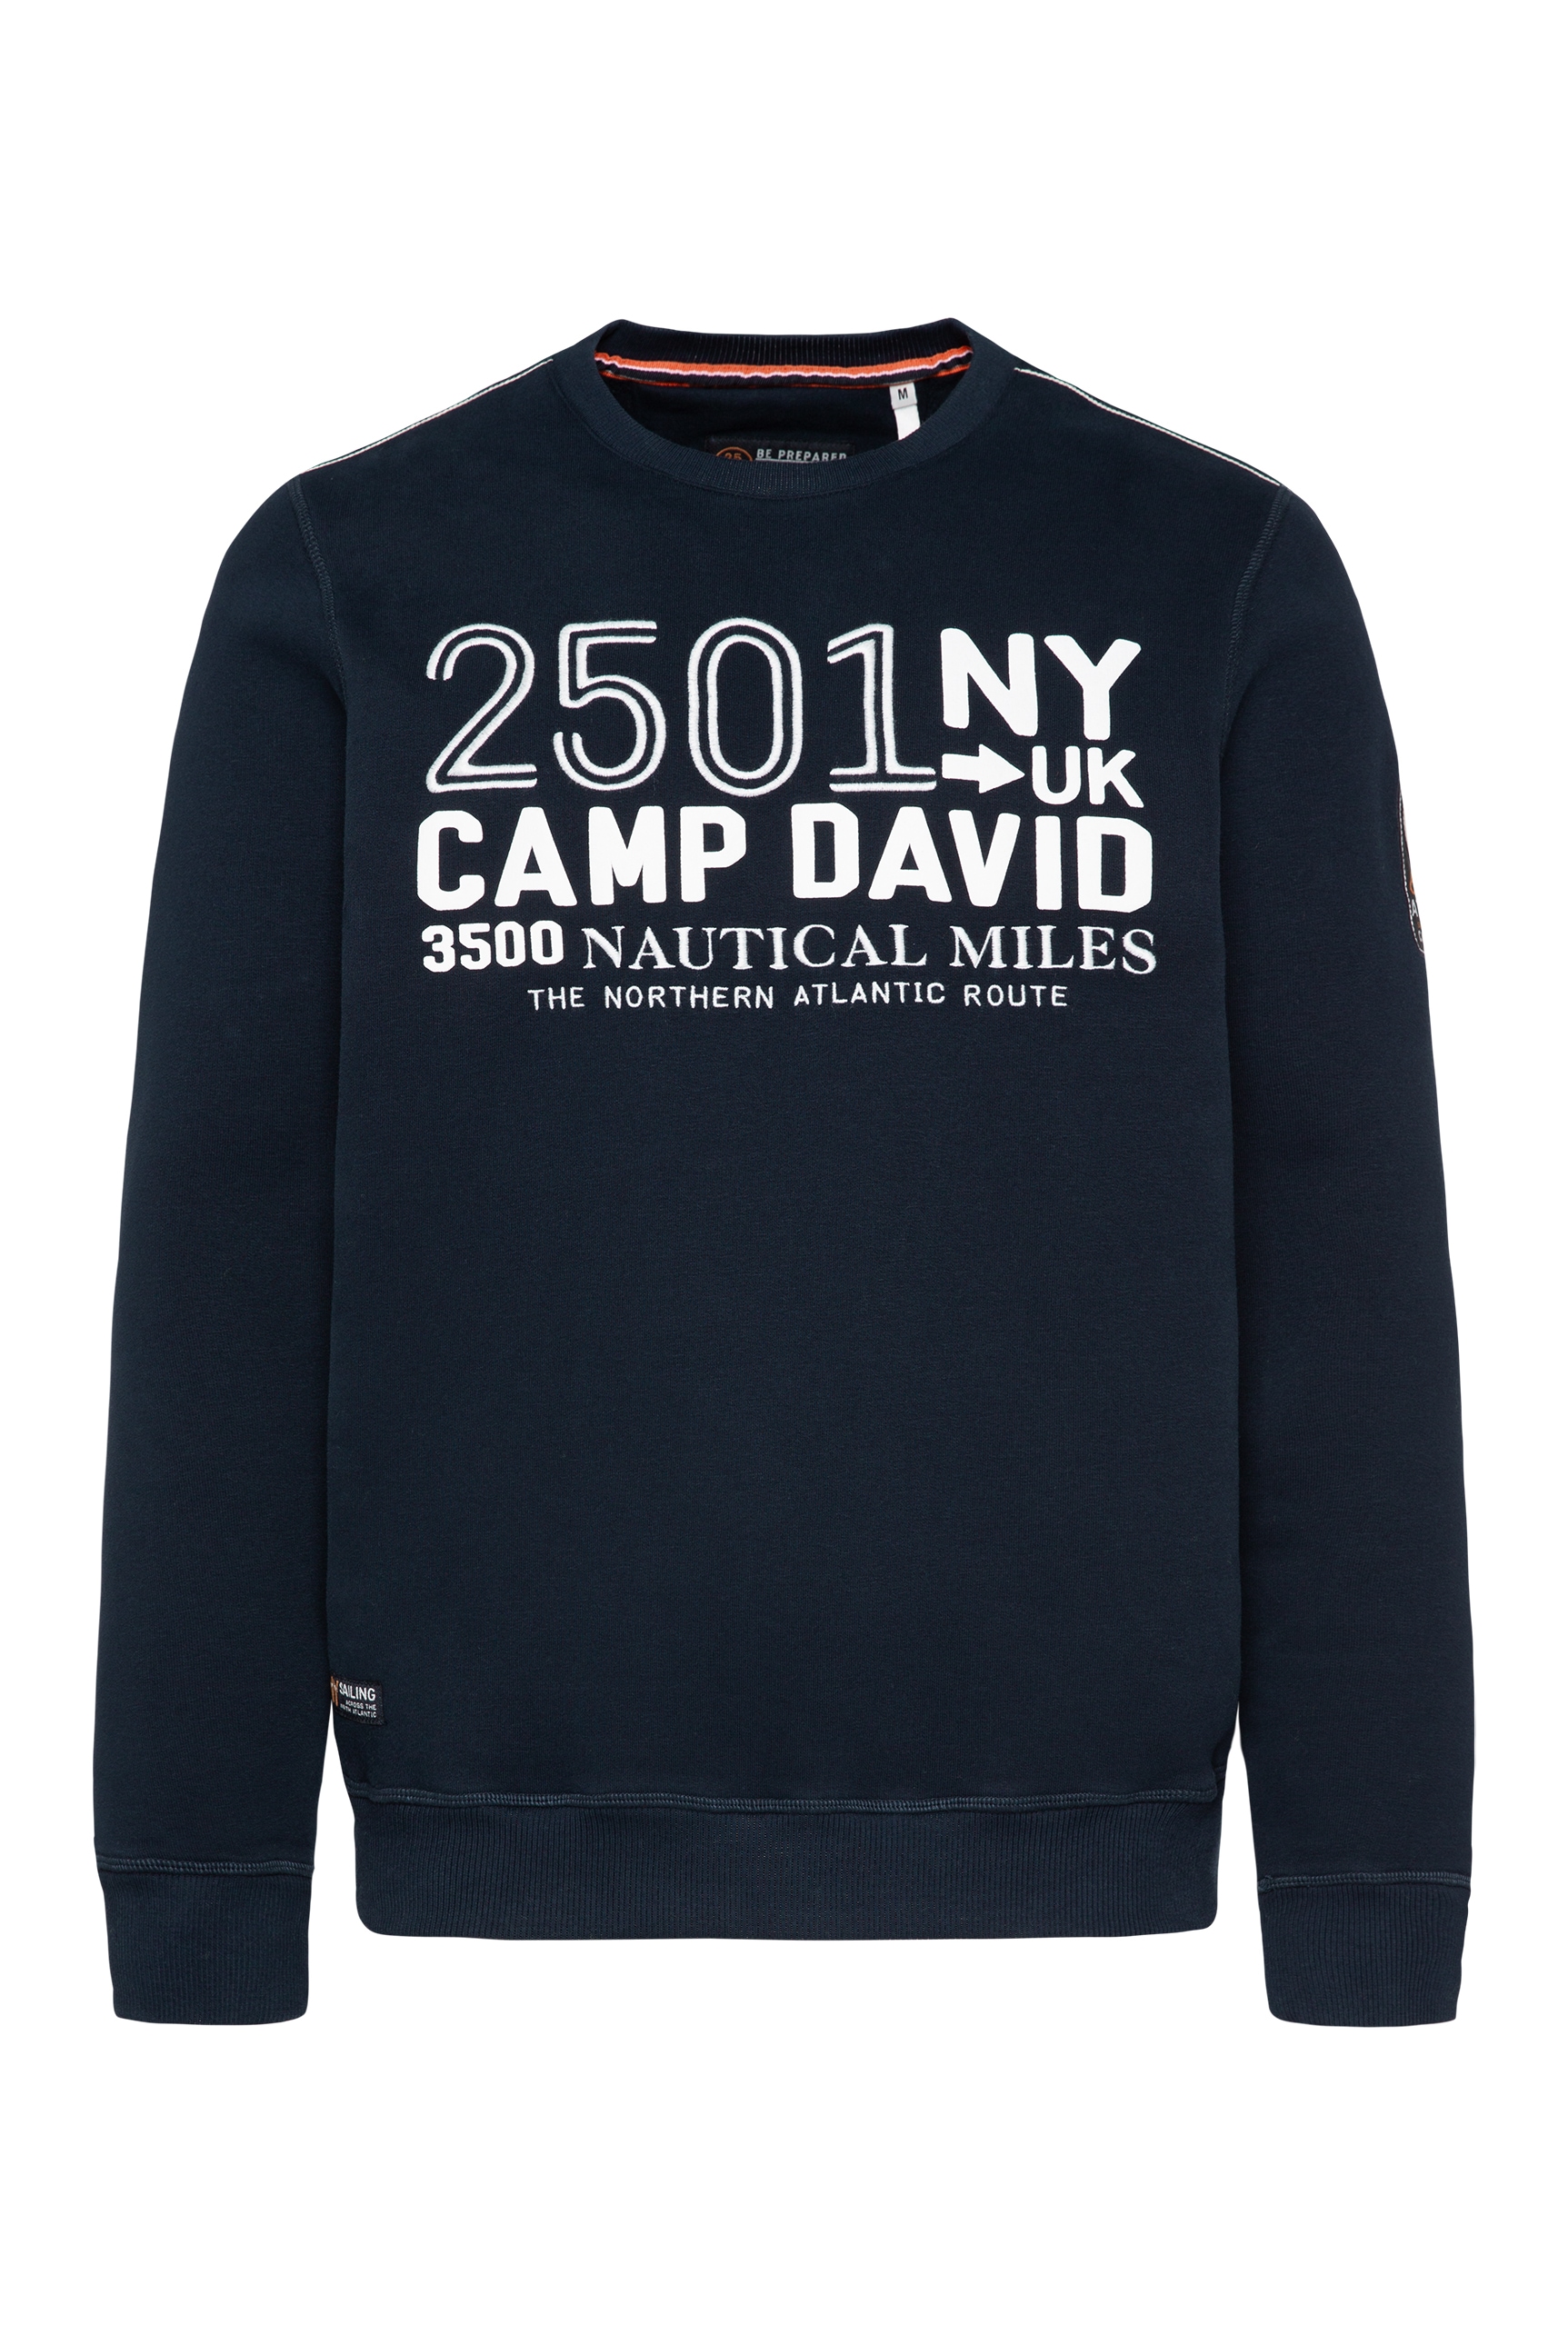 CAMP DAVID Sweater, mit Baumwolle